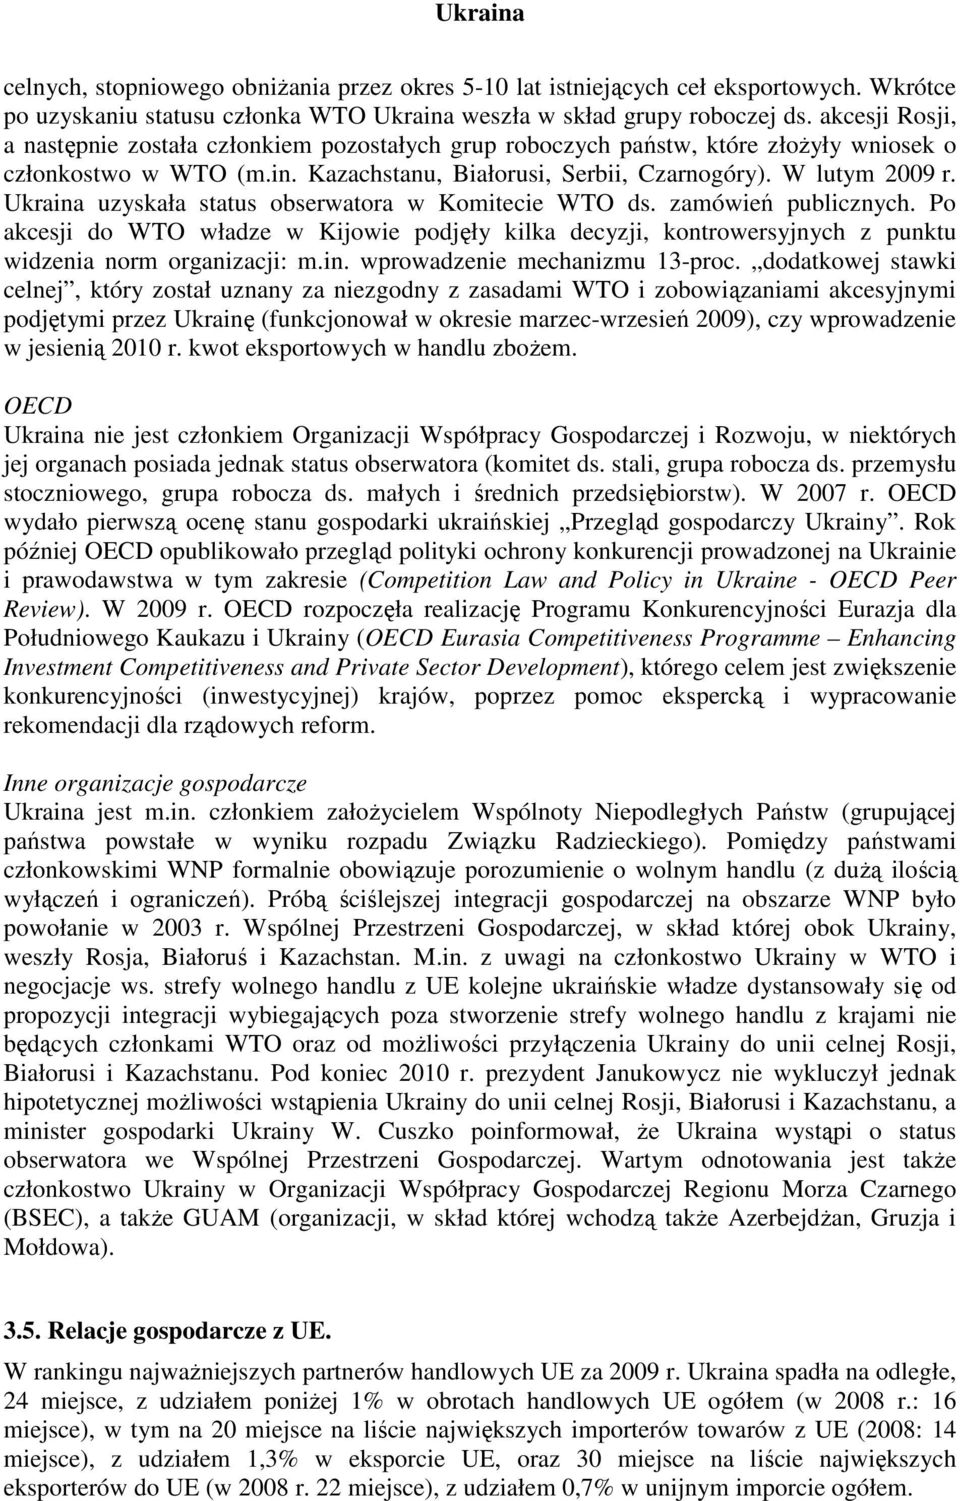 Ukraina uzyskała status obserwatora w Komitecie WTO ds. zamówień publicznych. Po akcesji do WTO władze w Kijowie podjęły kilka decyzji, kontrowersyjnych z punktu widzenia norm organizacji: m.in. wprowadzenie mechanizmu 13-proc.